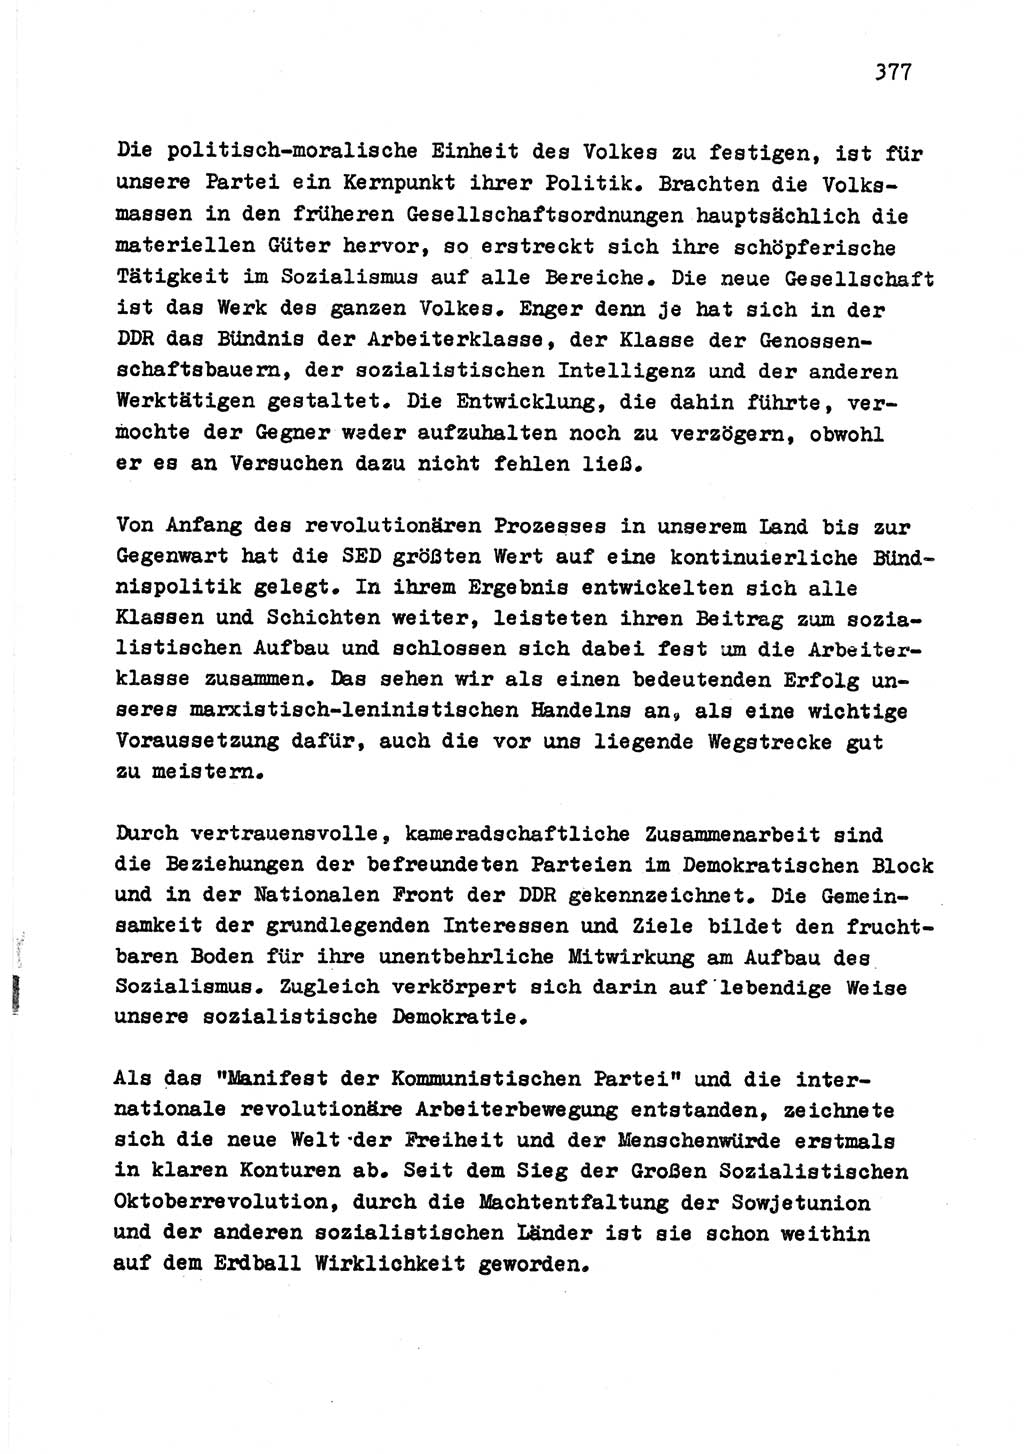 Zu Fragen der Parteiarbeit [Sozialistische Einheitspartei Deutschlands (SED) Deutsche Demokratische Republik (DDR)] 1979, Seite 377 (Fr. PA SED DDR 1979, S. 377)